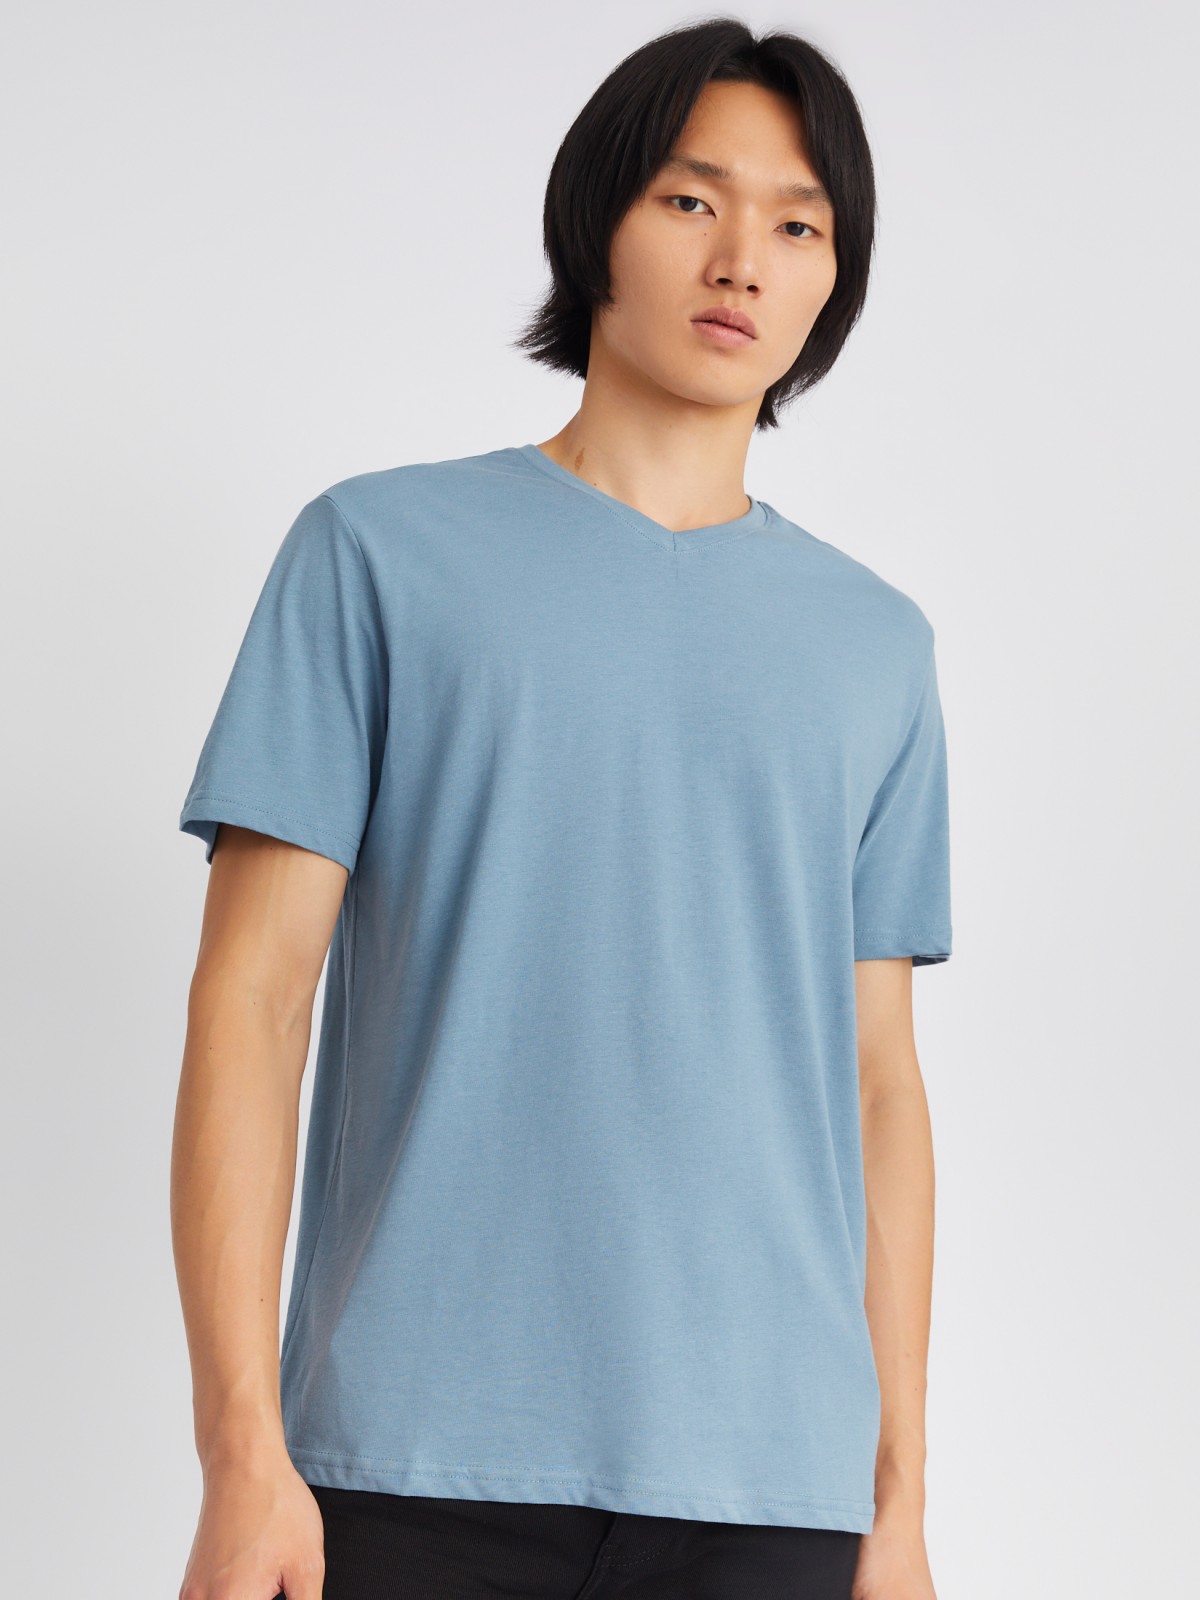 Трикотажная футболка с треугольным вырезом zolla 01331325Q032, цвет голубой, размер XL - фото 4